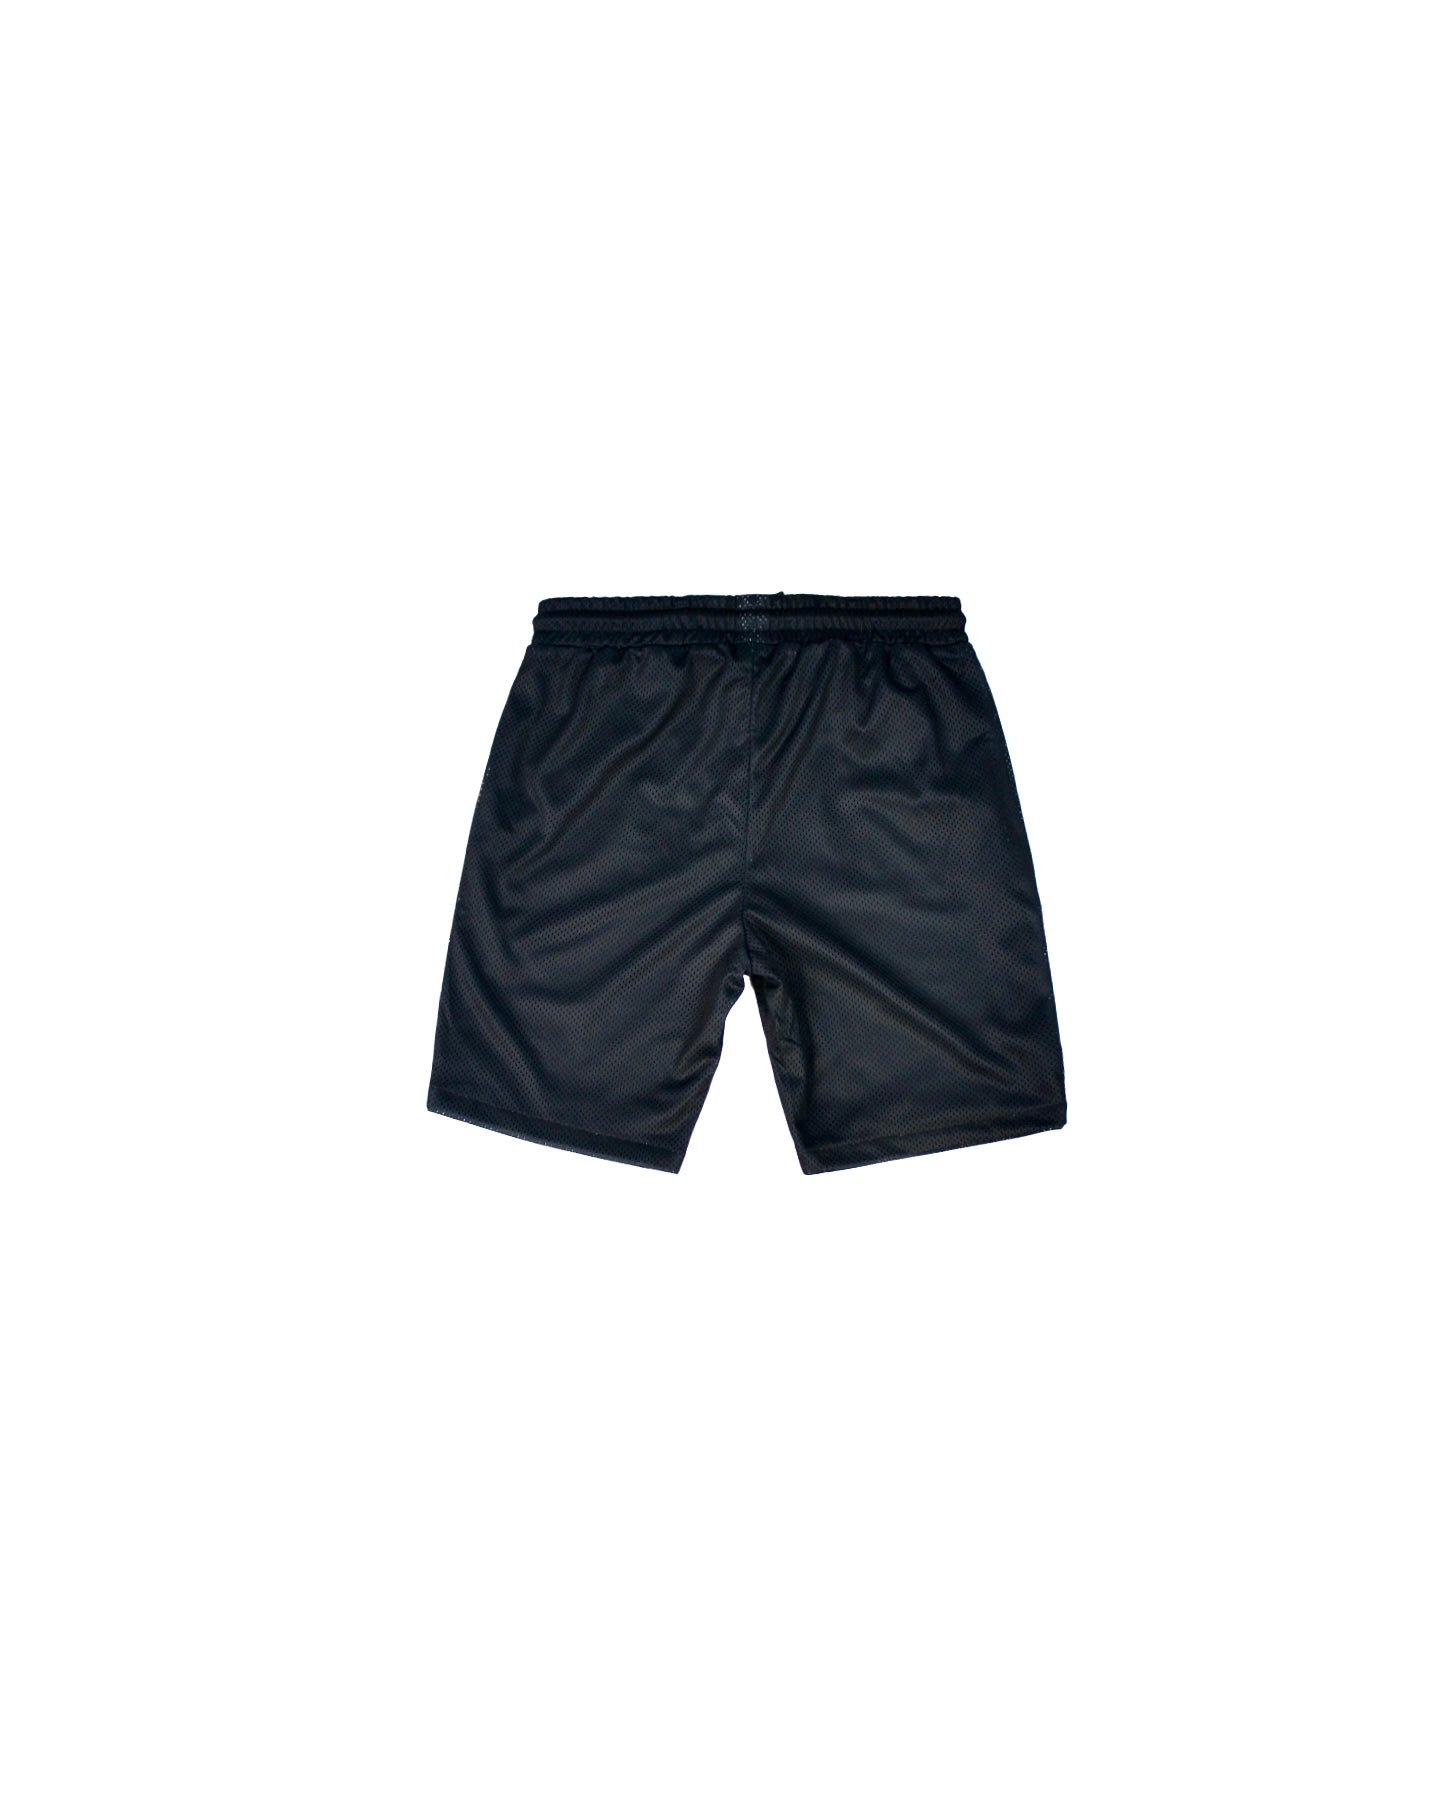 Black Mesh NY Shorts